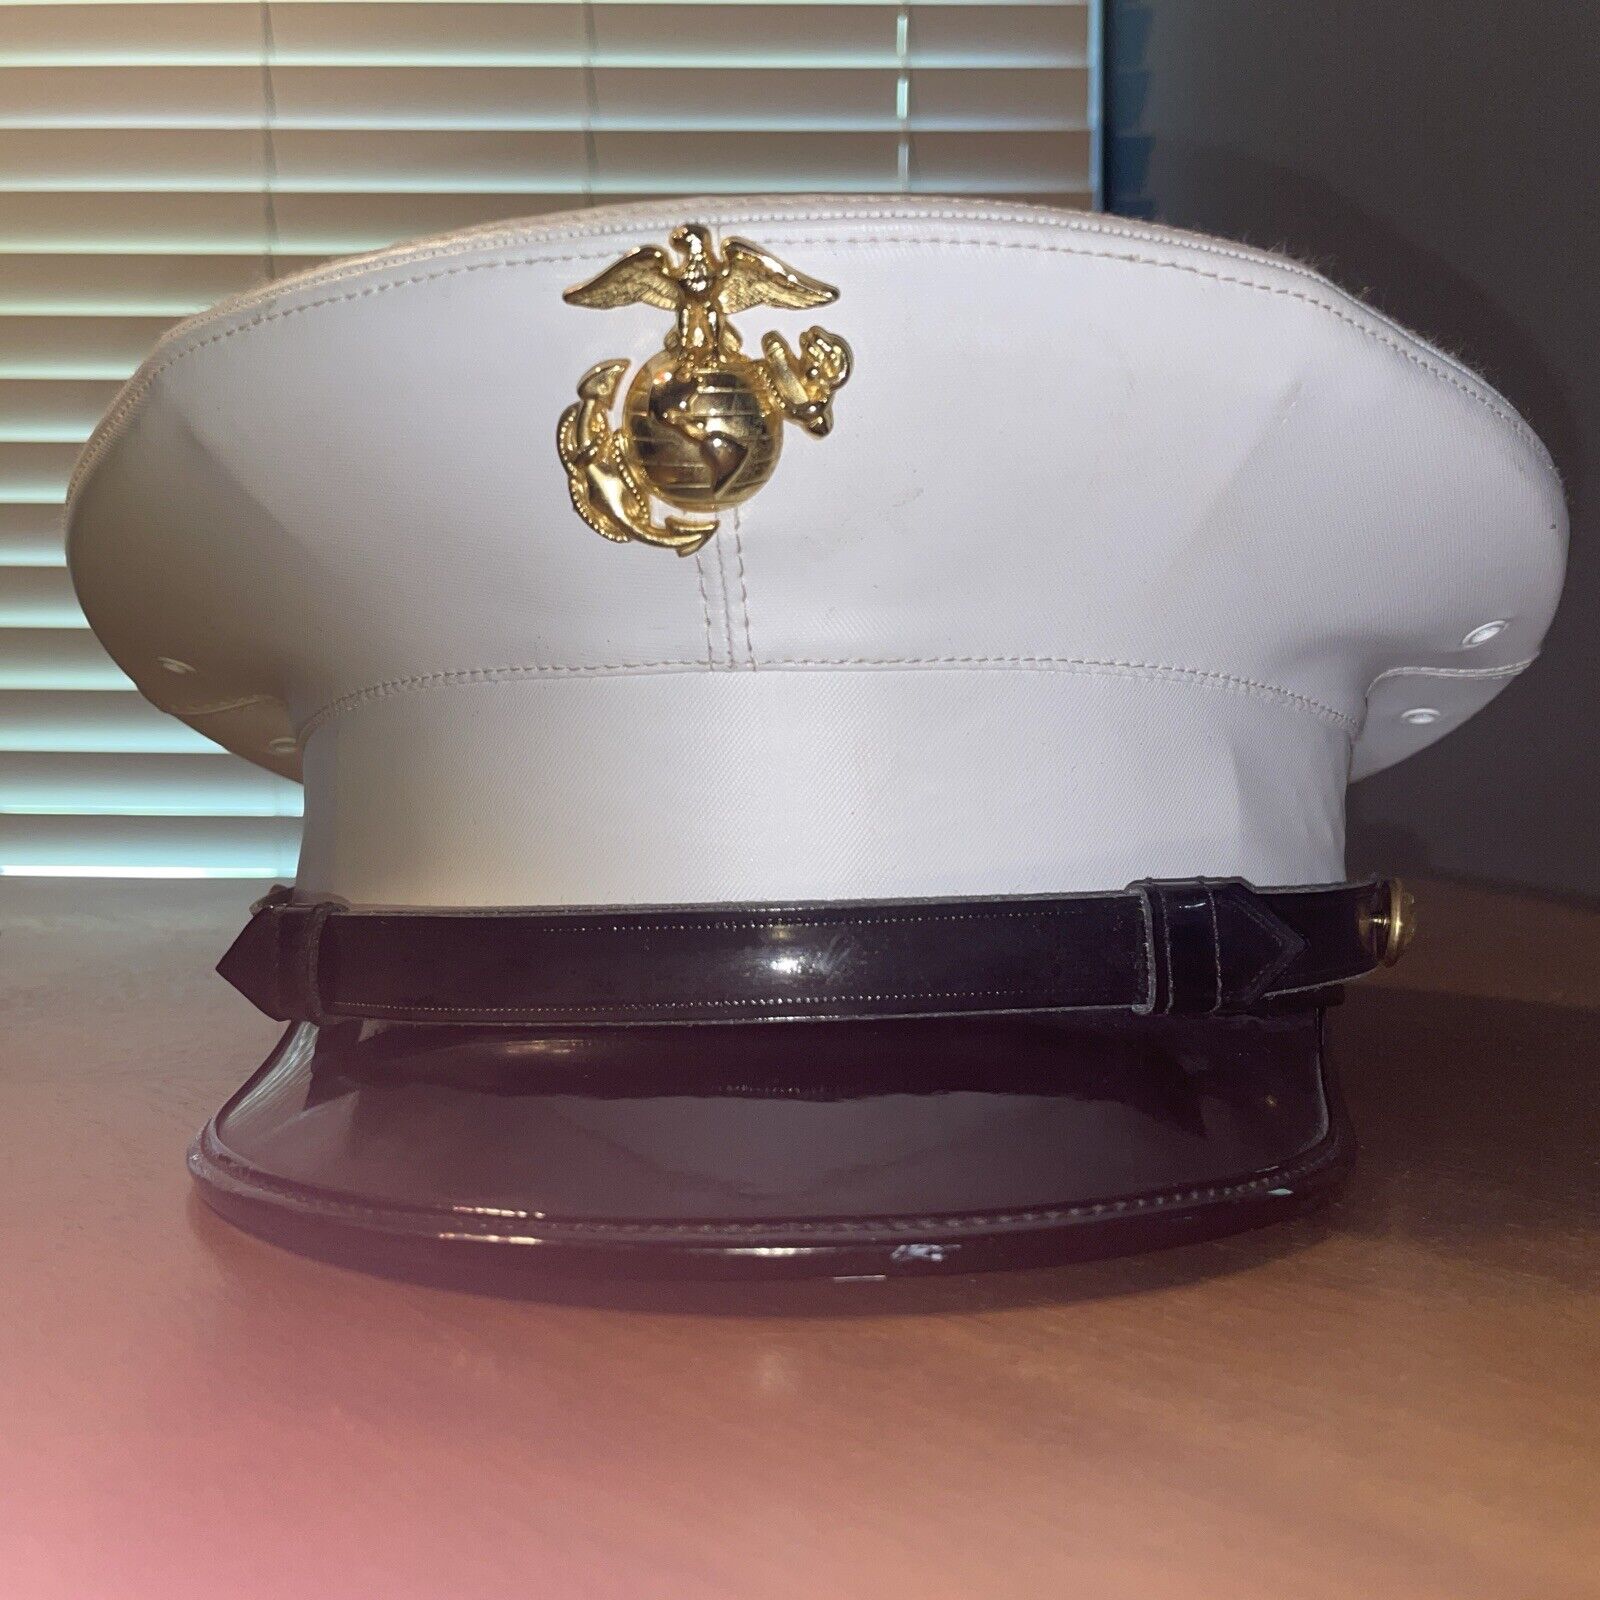 Official USMC Marine Corps Dress Blues White Vinyl Cover Hat Cap Size 7 1/8